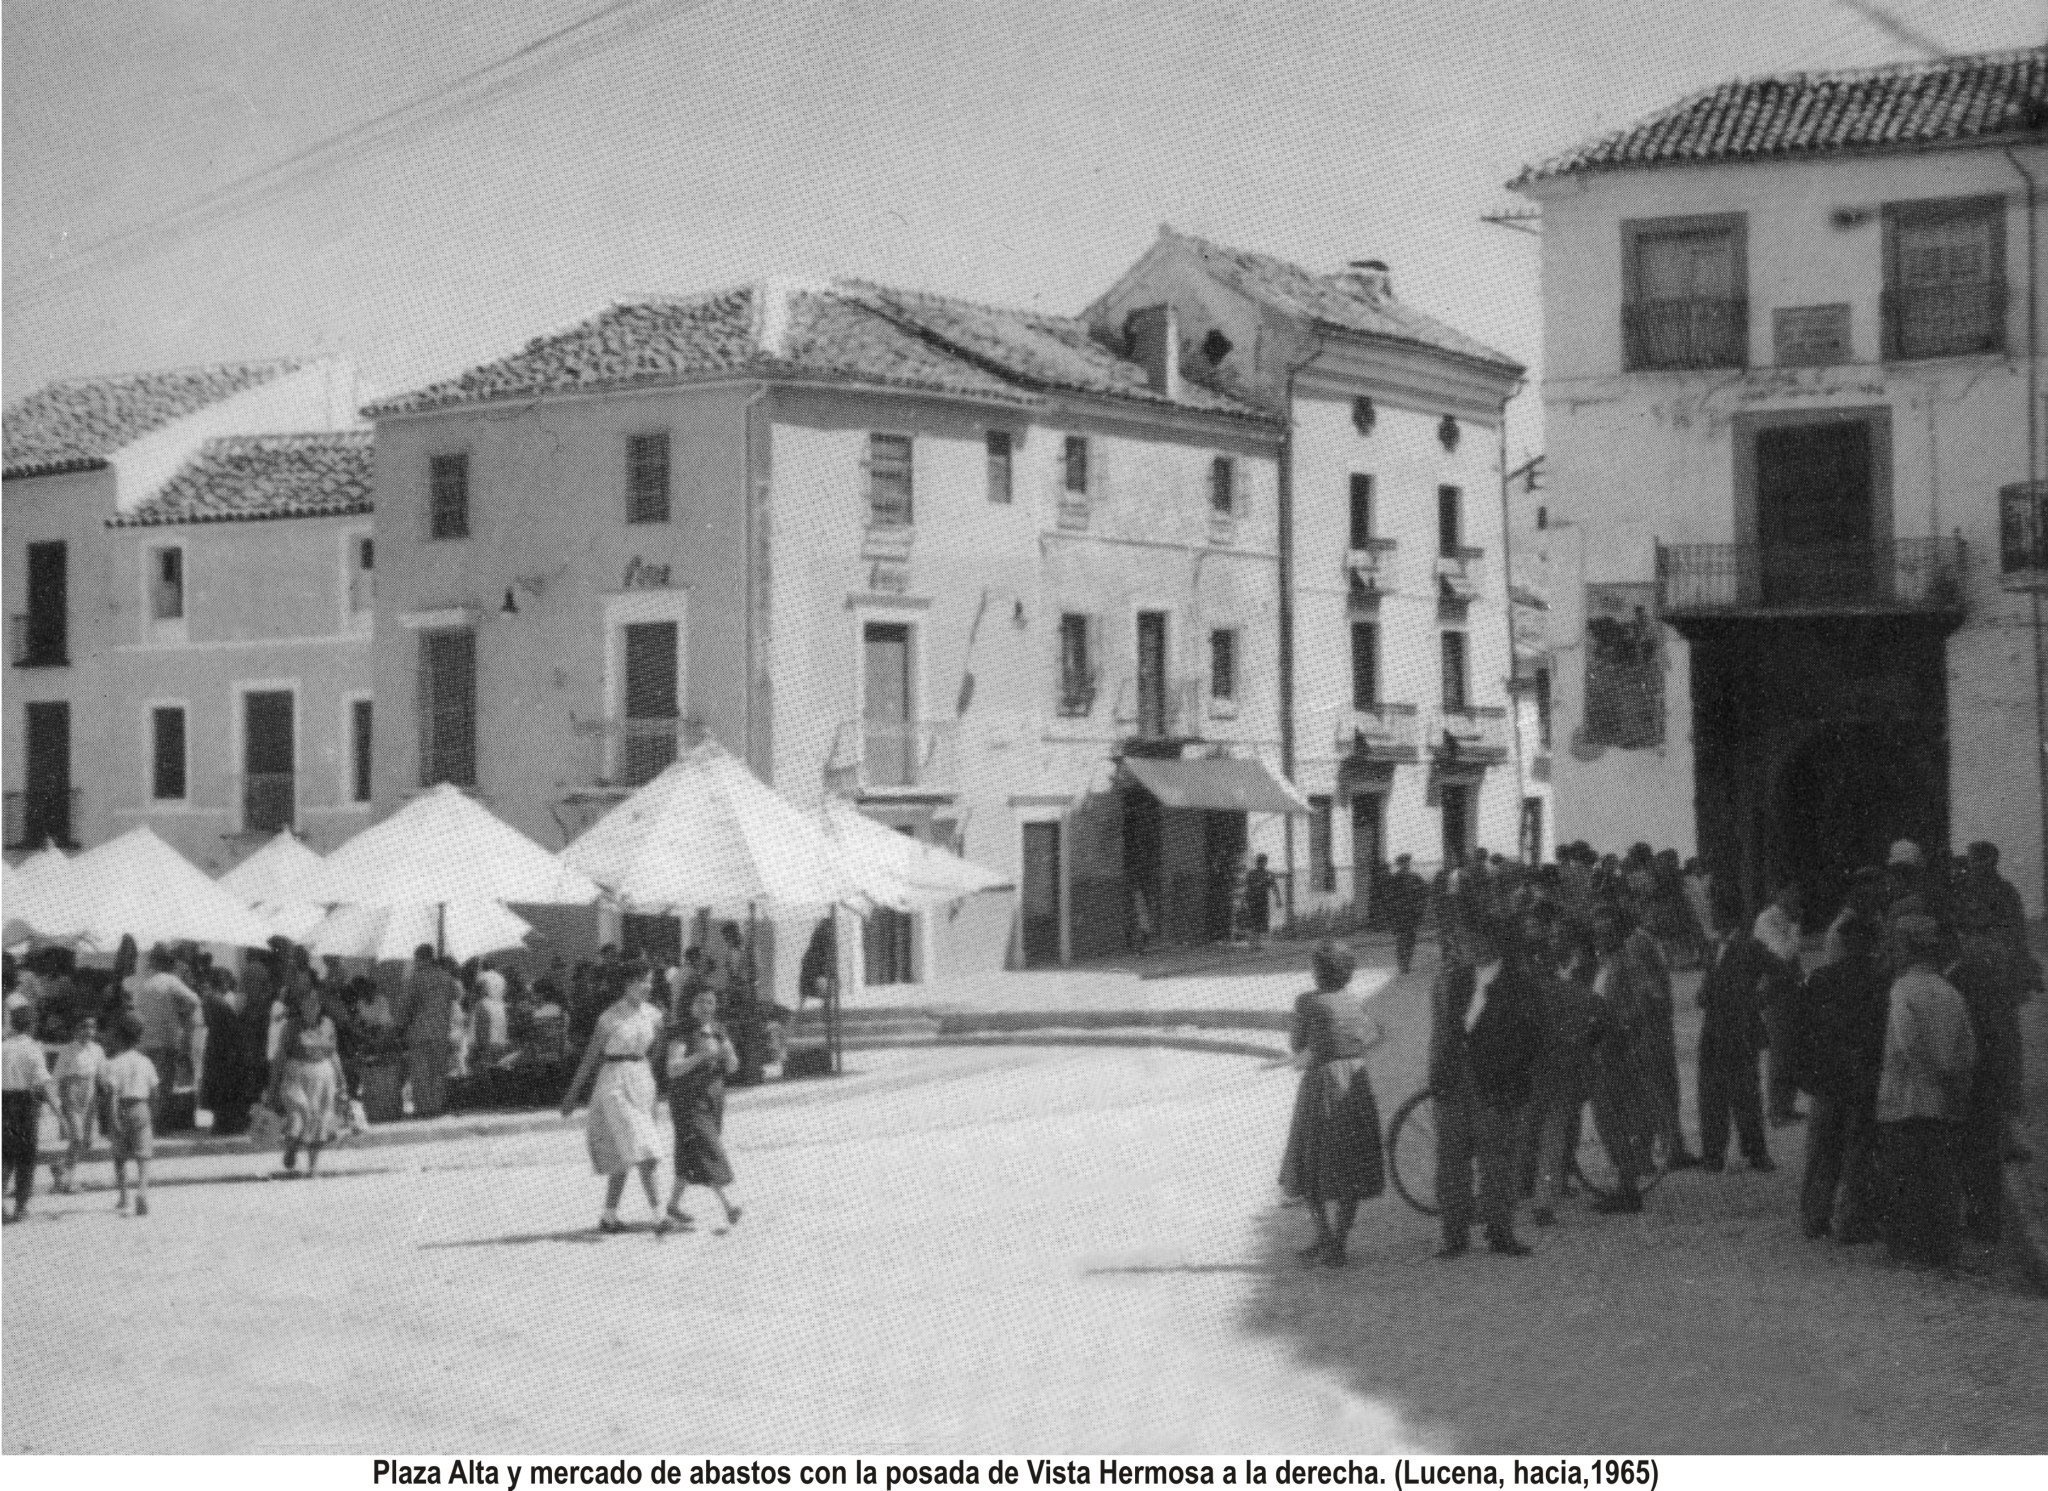 Plaza Alta. Mercado de abastos. Posada de Vistahermosa 1965